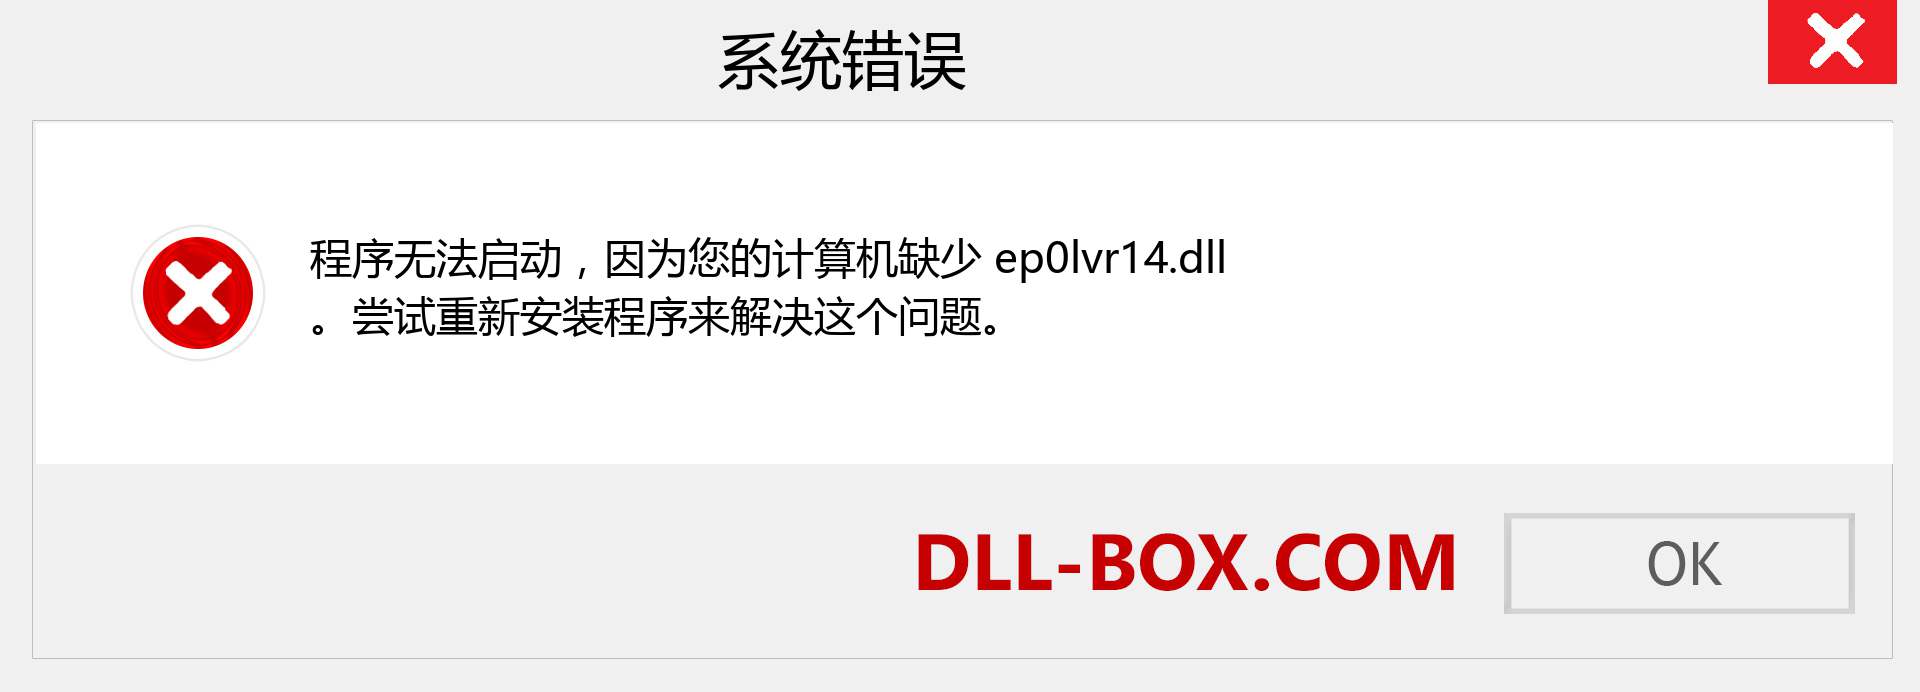 ep0lvr14.dll 文件丢失？。 适用于 Windows 7、8、10 的下载 - 修复 Windows、照片、图像上的 ep0lvr14 dll 丢失错误